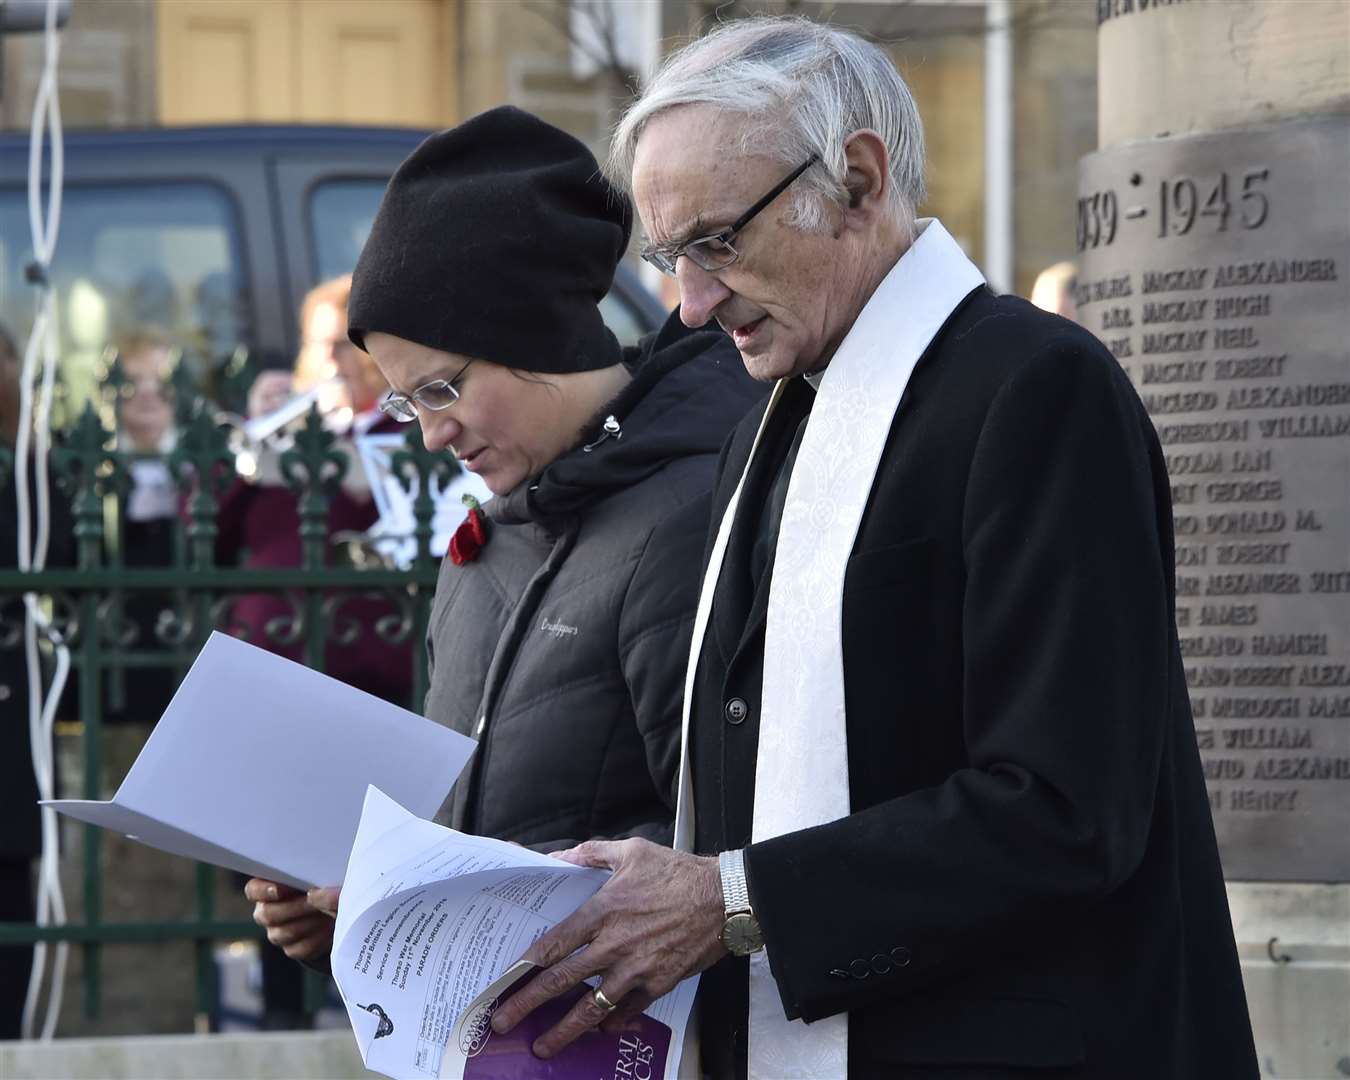 The Rev Ronnie Johnstone alongside the Rev Ida Tenglerova at Thurso's remembrance service in 2018.